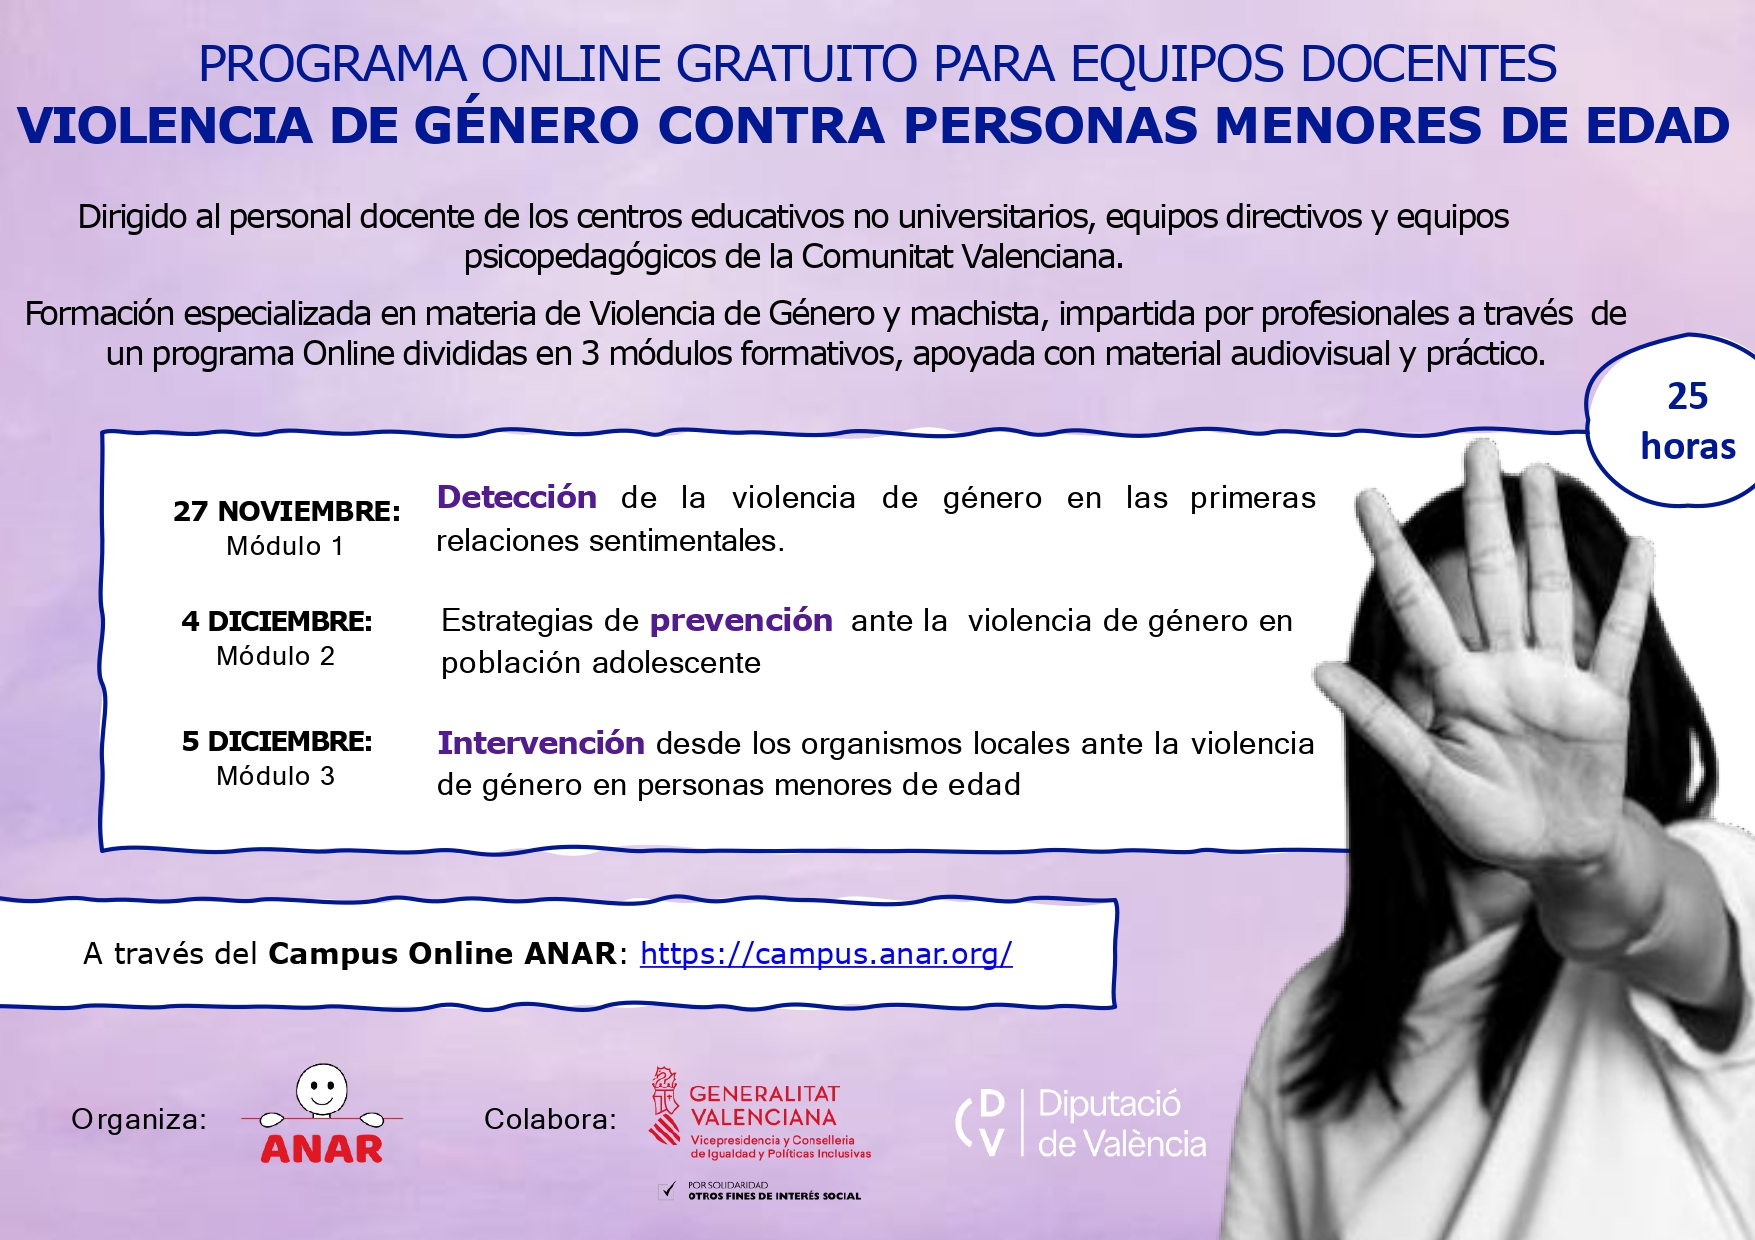 Curso GRATUITO online de prevención, detección e intervención de la Violencia de Género en Personas menores de edad de Fundación ANAR